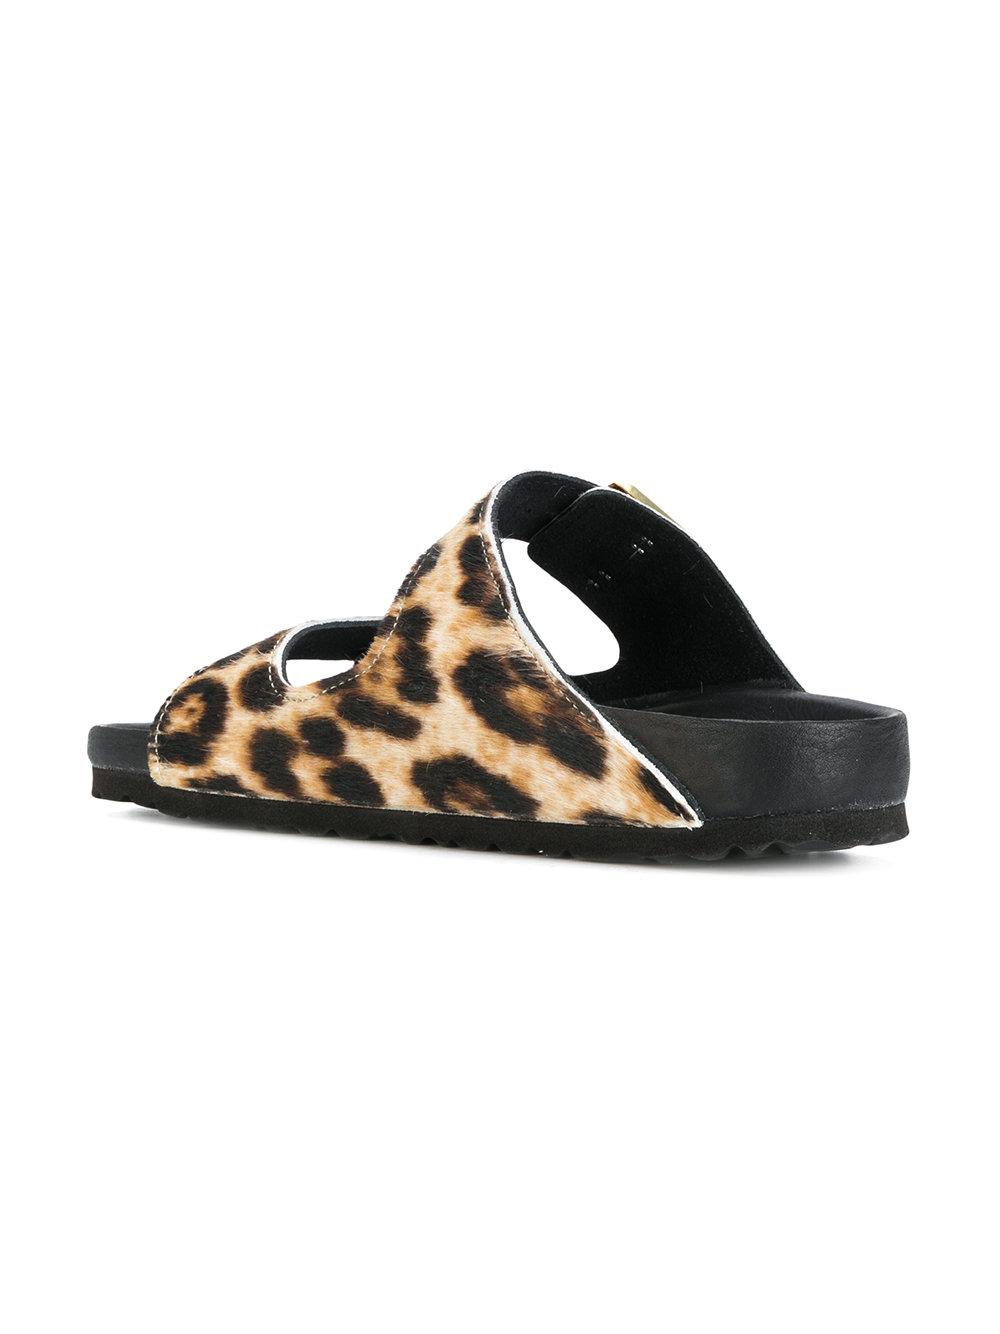 cheetah birkenstock sandals